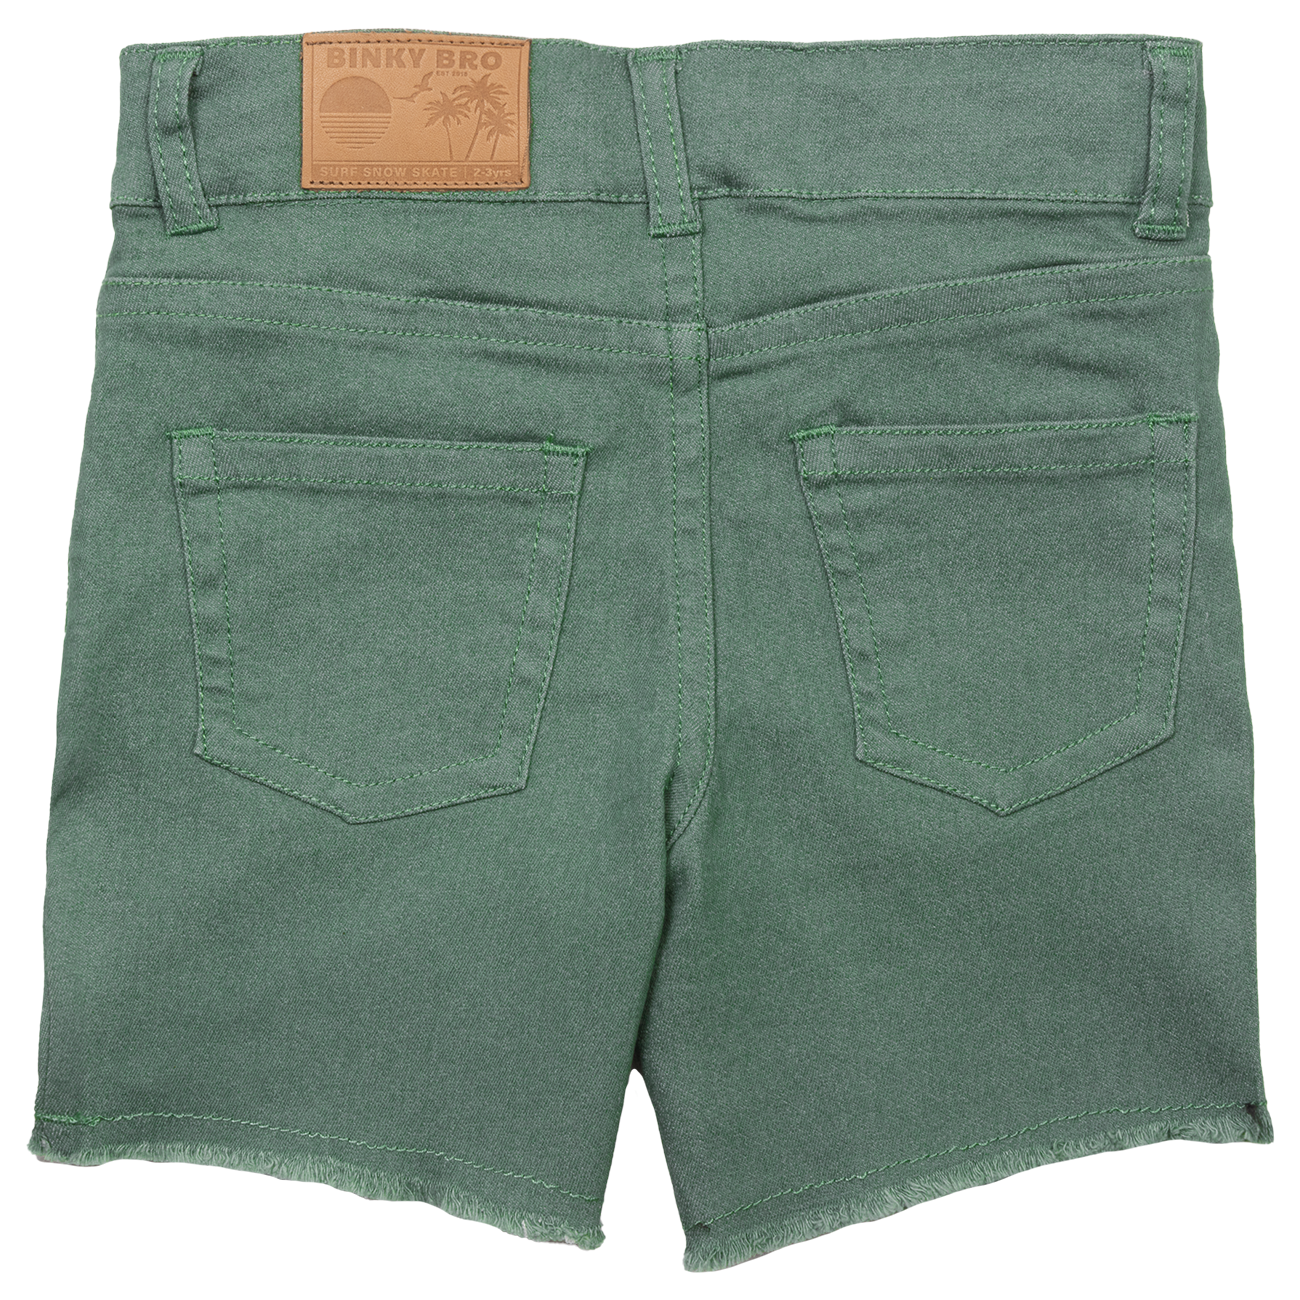 Waco Shorts (Green): 6 months - 12 months